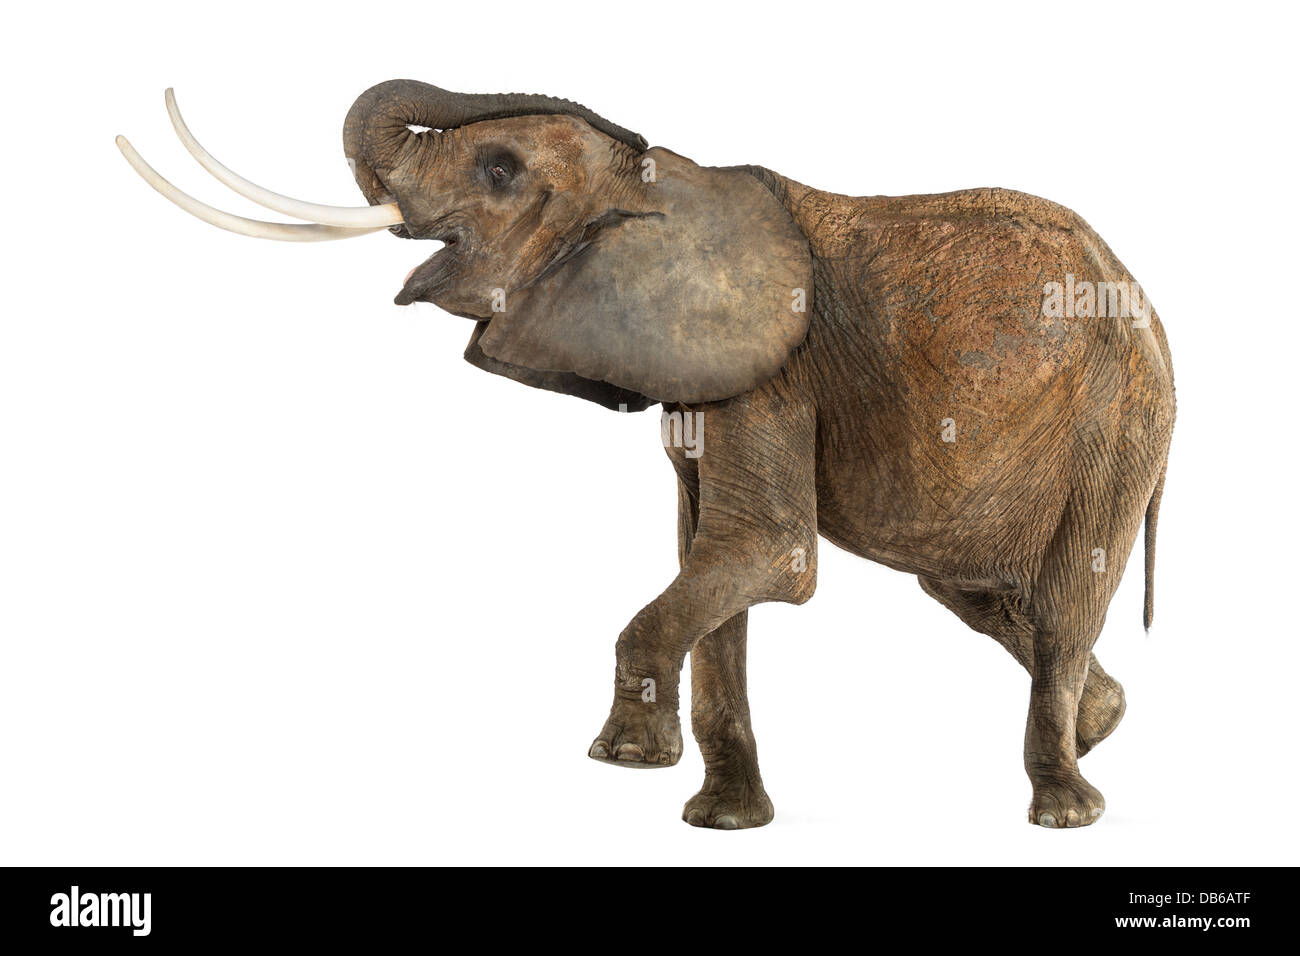 Vista laterale di un elefante africano Loxodonta africana, eseguire contro uno sfondo bianco Foto Stock